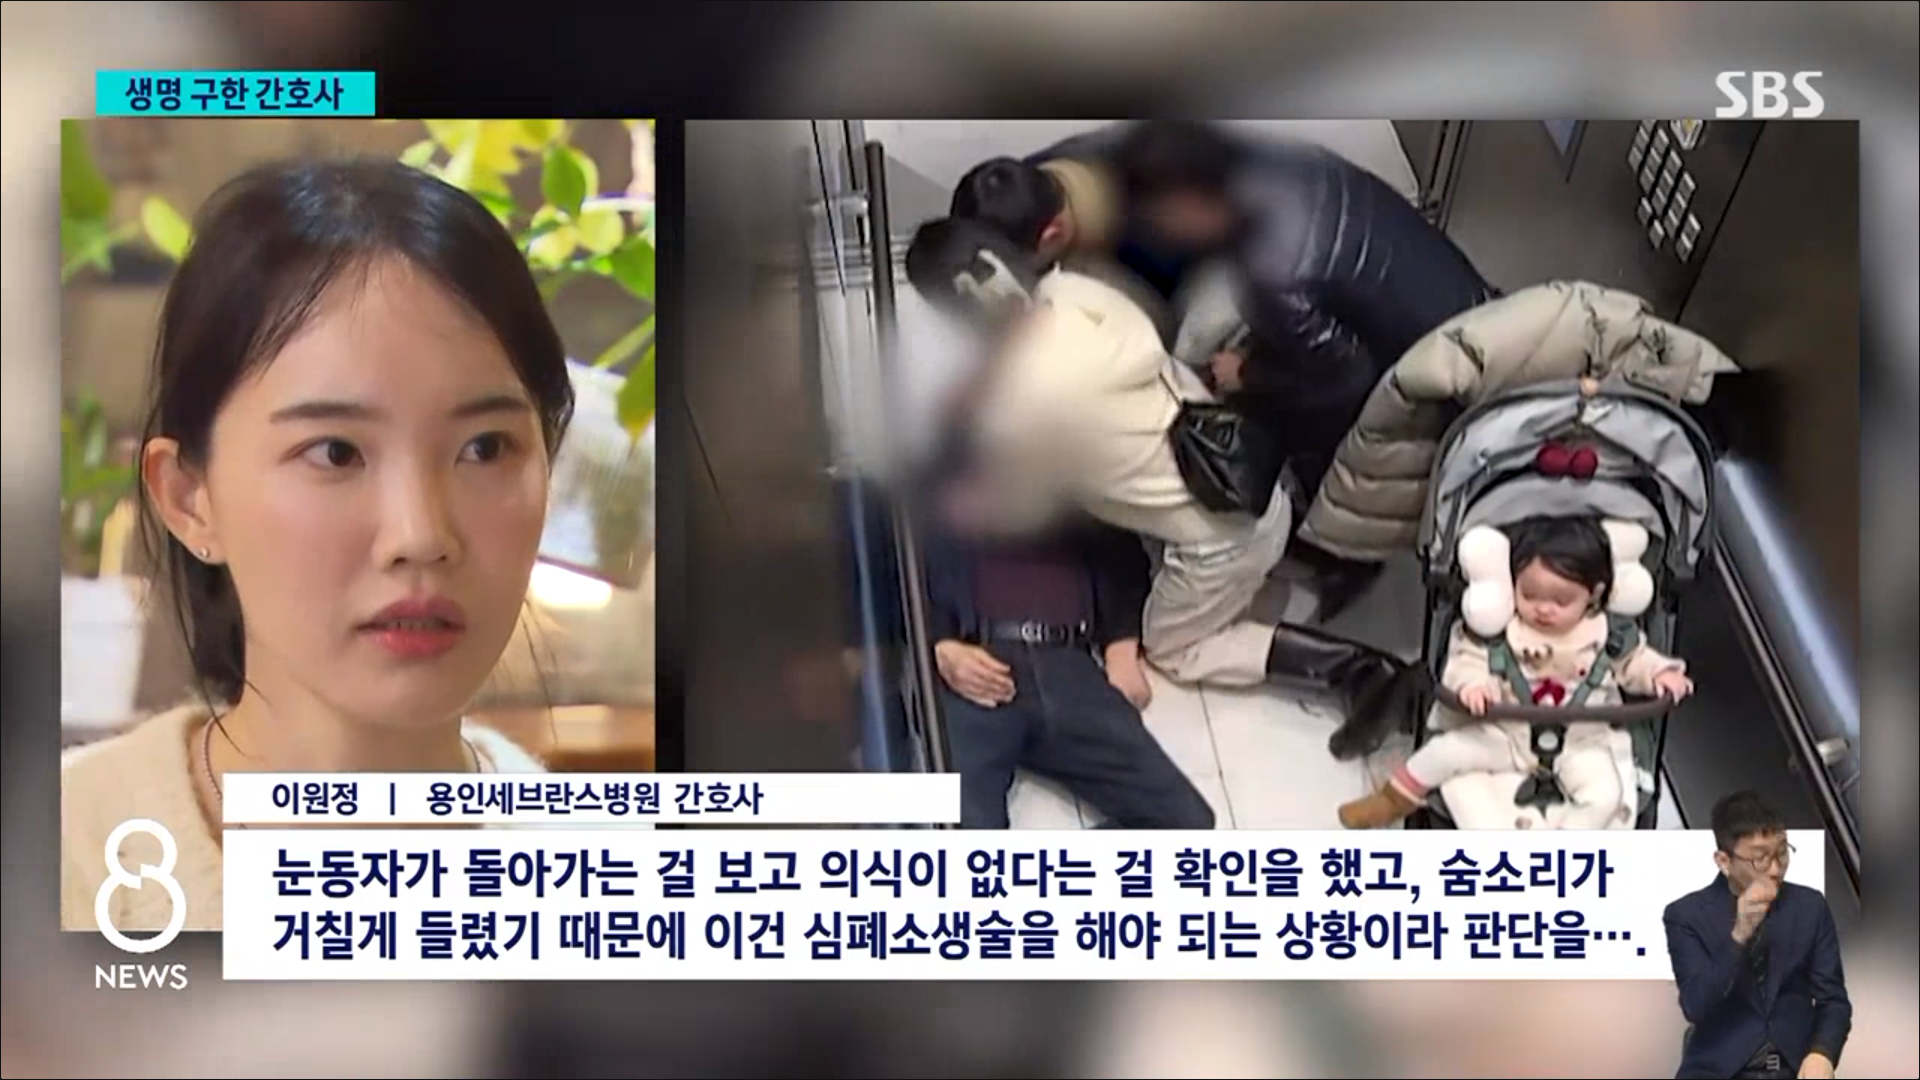 지난 25일 서울 여의도에 있는 백화점의 승강기 안에서 60대 남성이 갑자기 쓰러지자 함께 탑승하고 있었던 간호사 이원정씨가 심폐소생술을 진행했다. SBS 보도화면 캡처